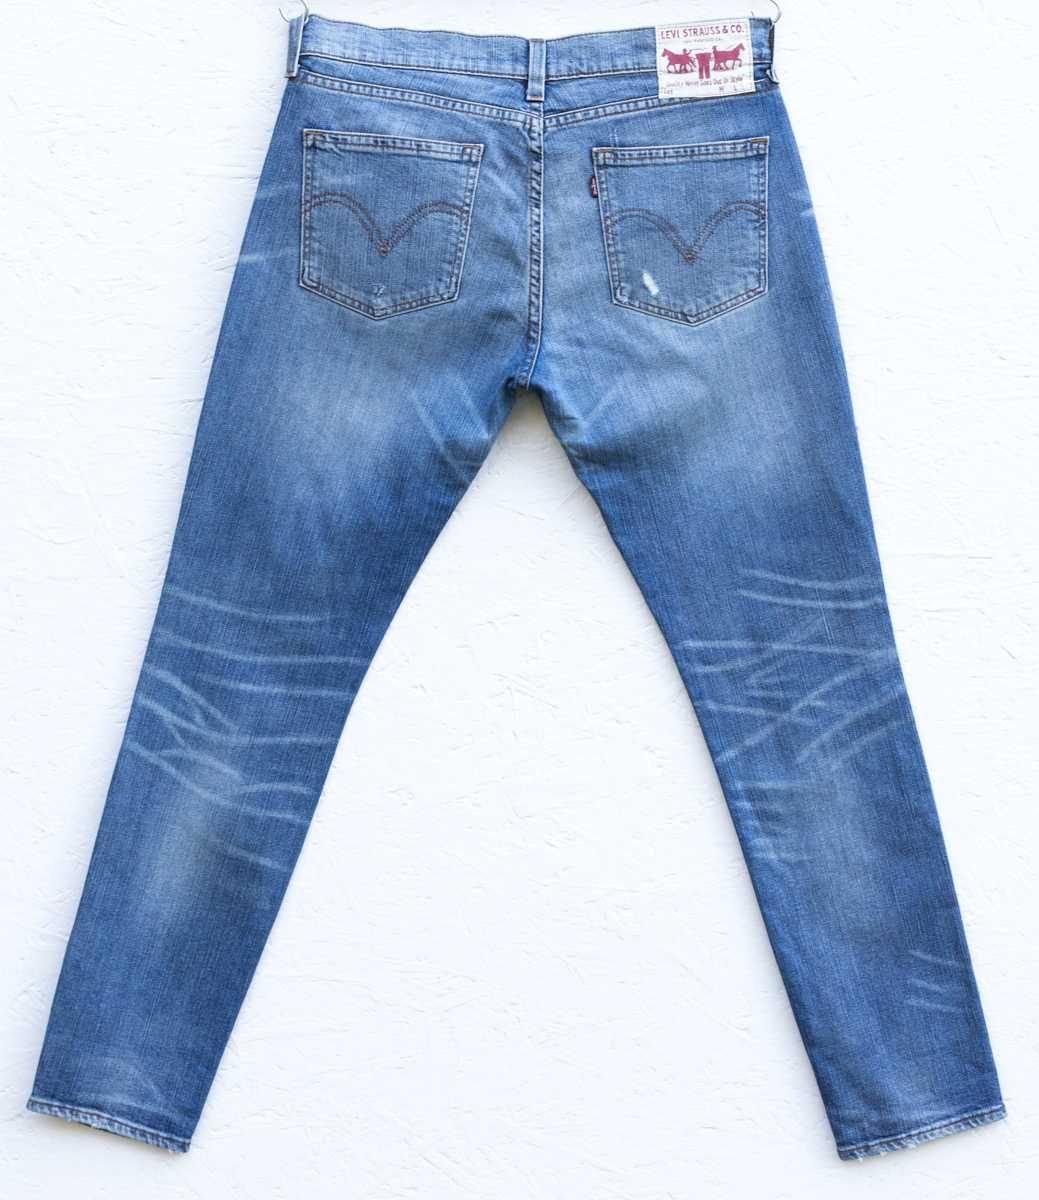 Levi's 520 W30 L32 przecierane jeansy slim fit szyte w Polsce! #rare